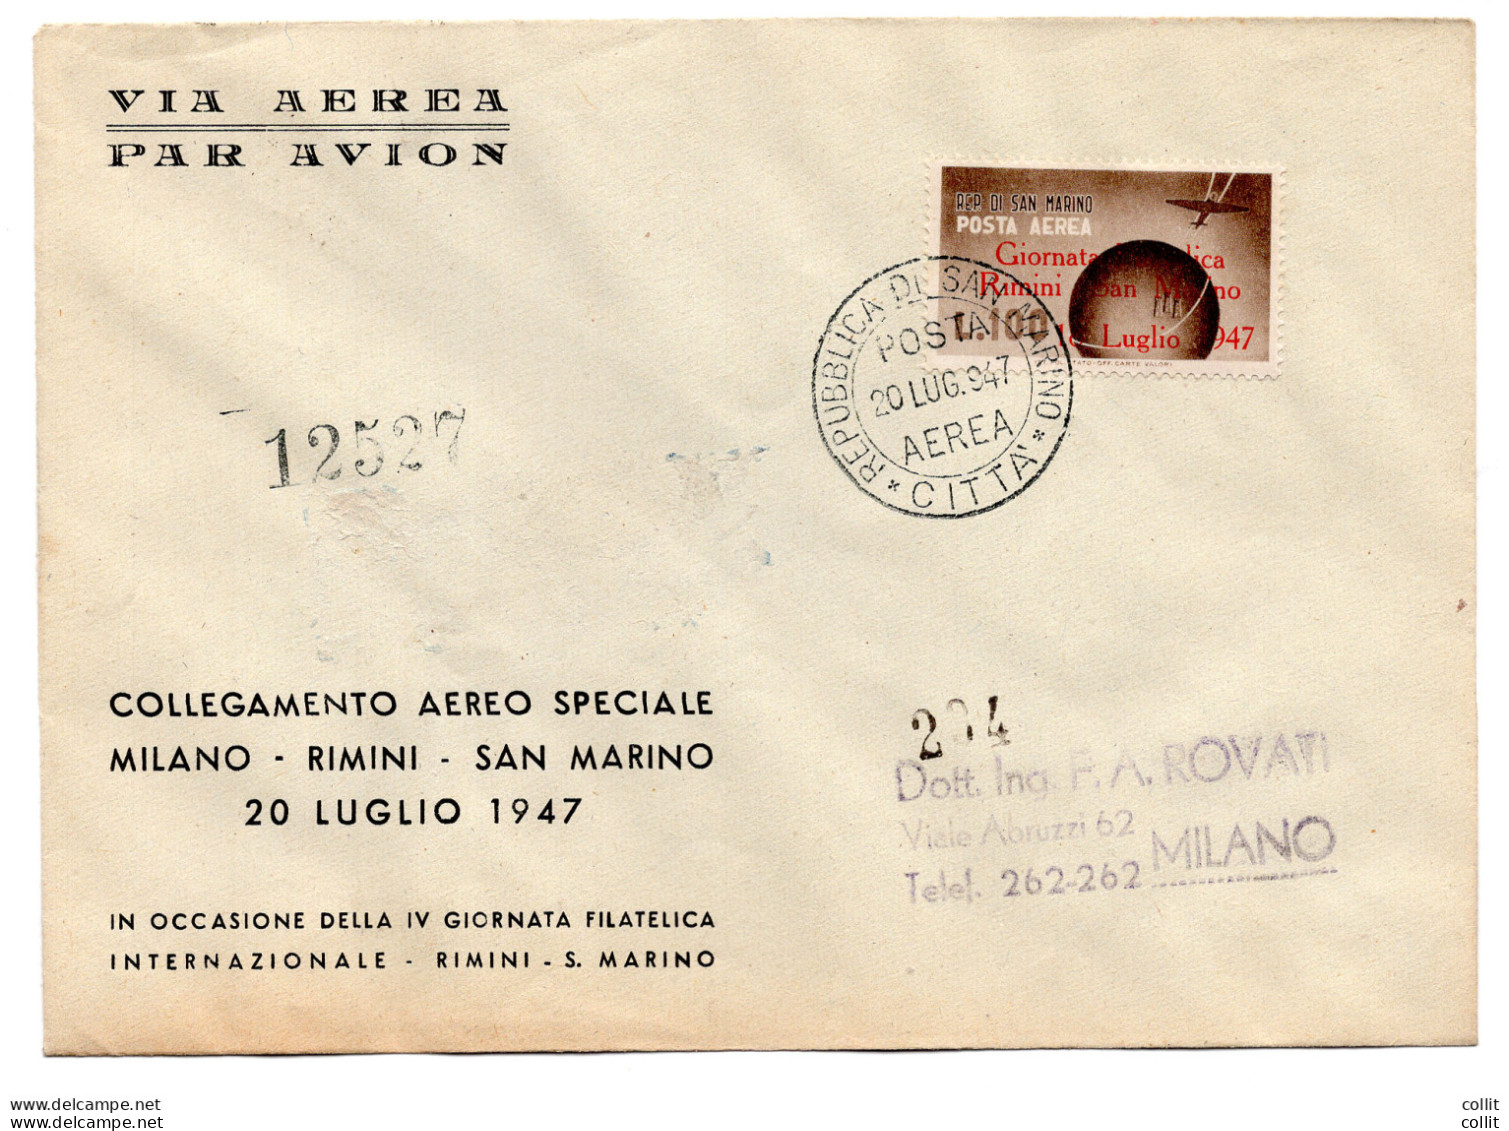 San Marino - Collegamento Aereo Speciale Milano/Rimini/San Marino - Airmail